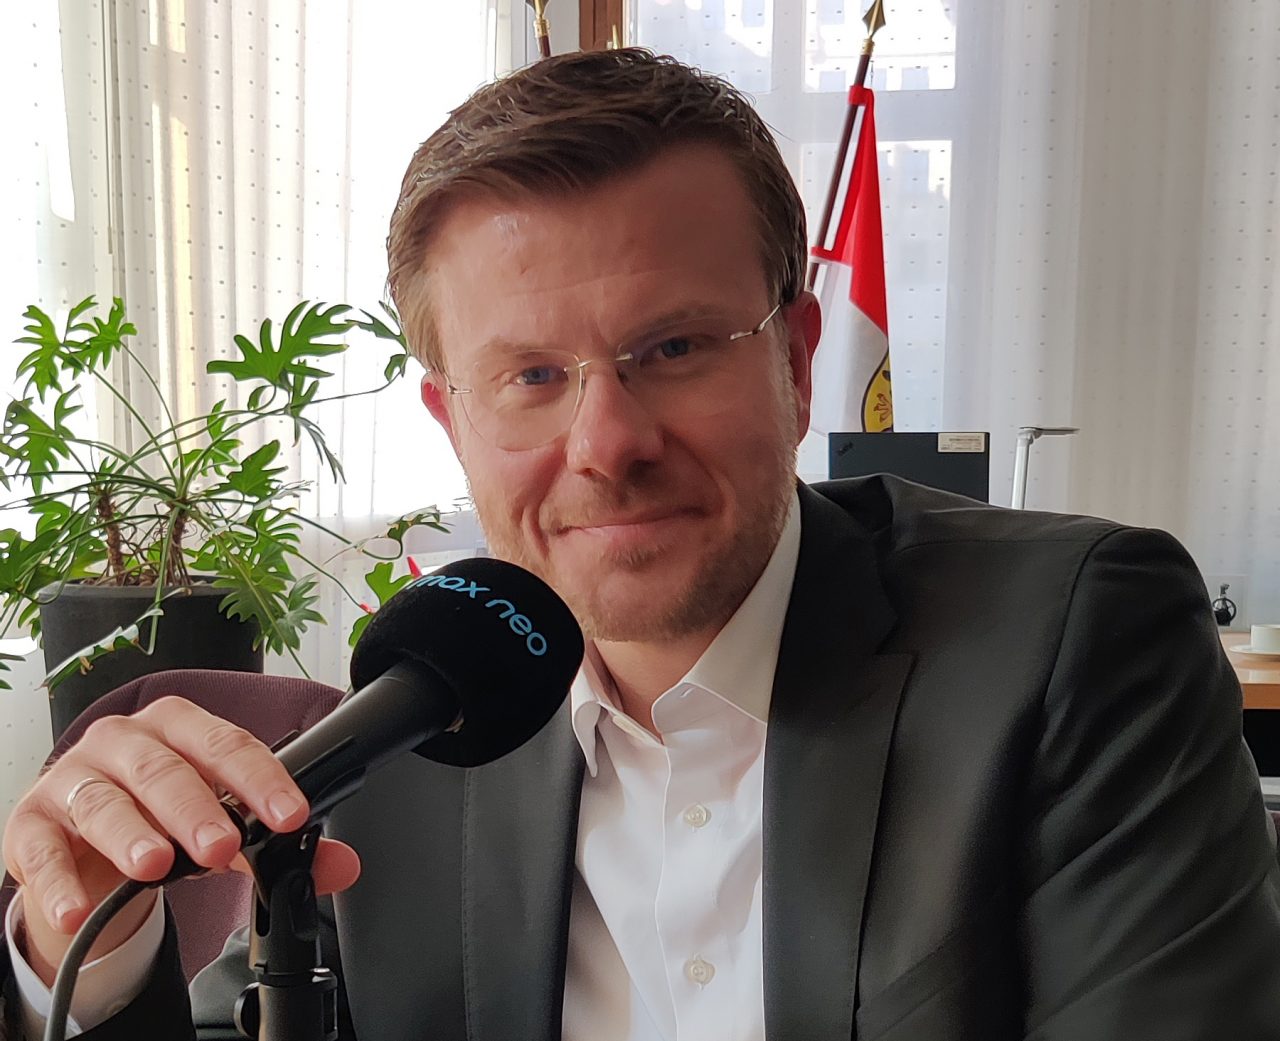 Das Foto zeigt Nürnbergs Oberbürgermeister Marcus König, wie er vor einem Mikrofon am Tisch seines Büros sitzt.